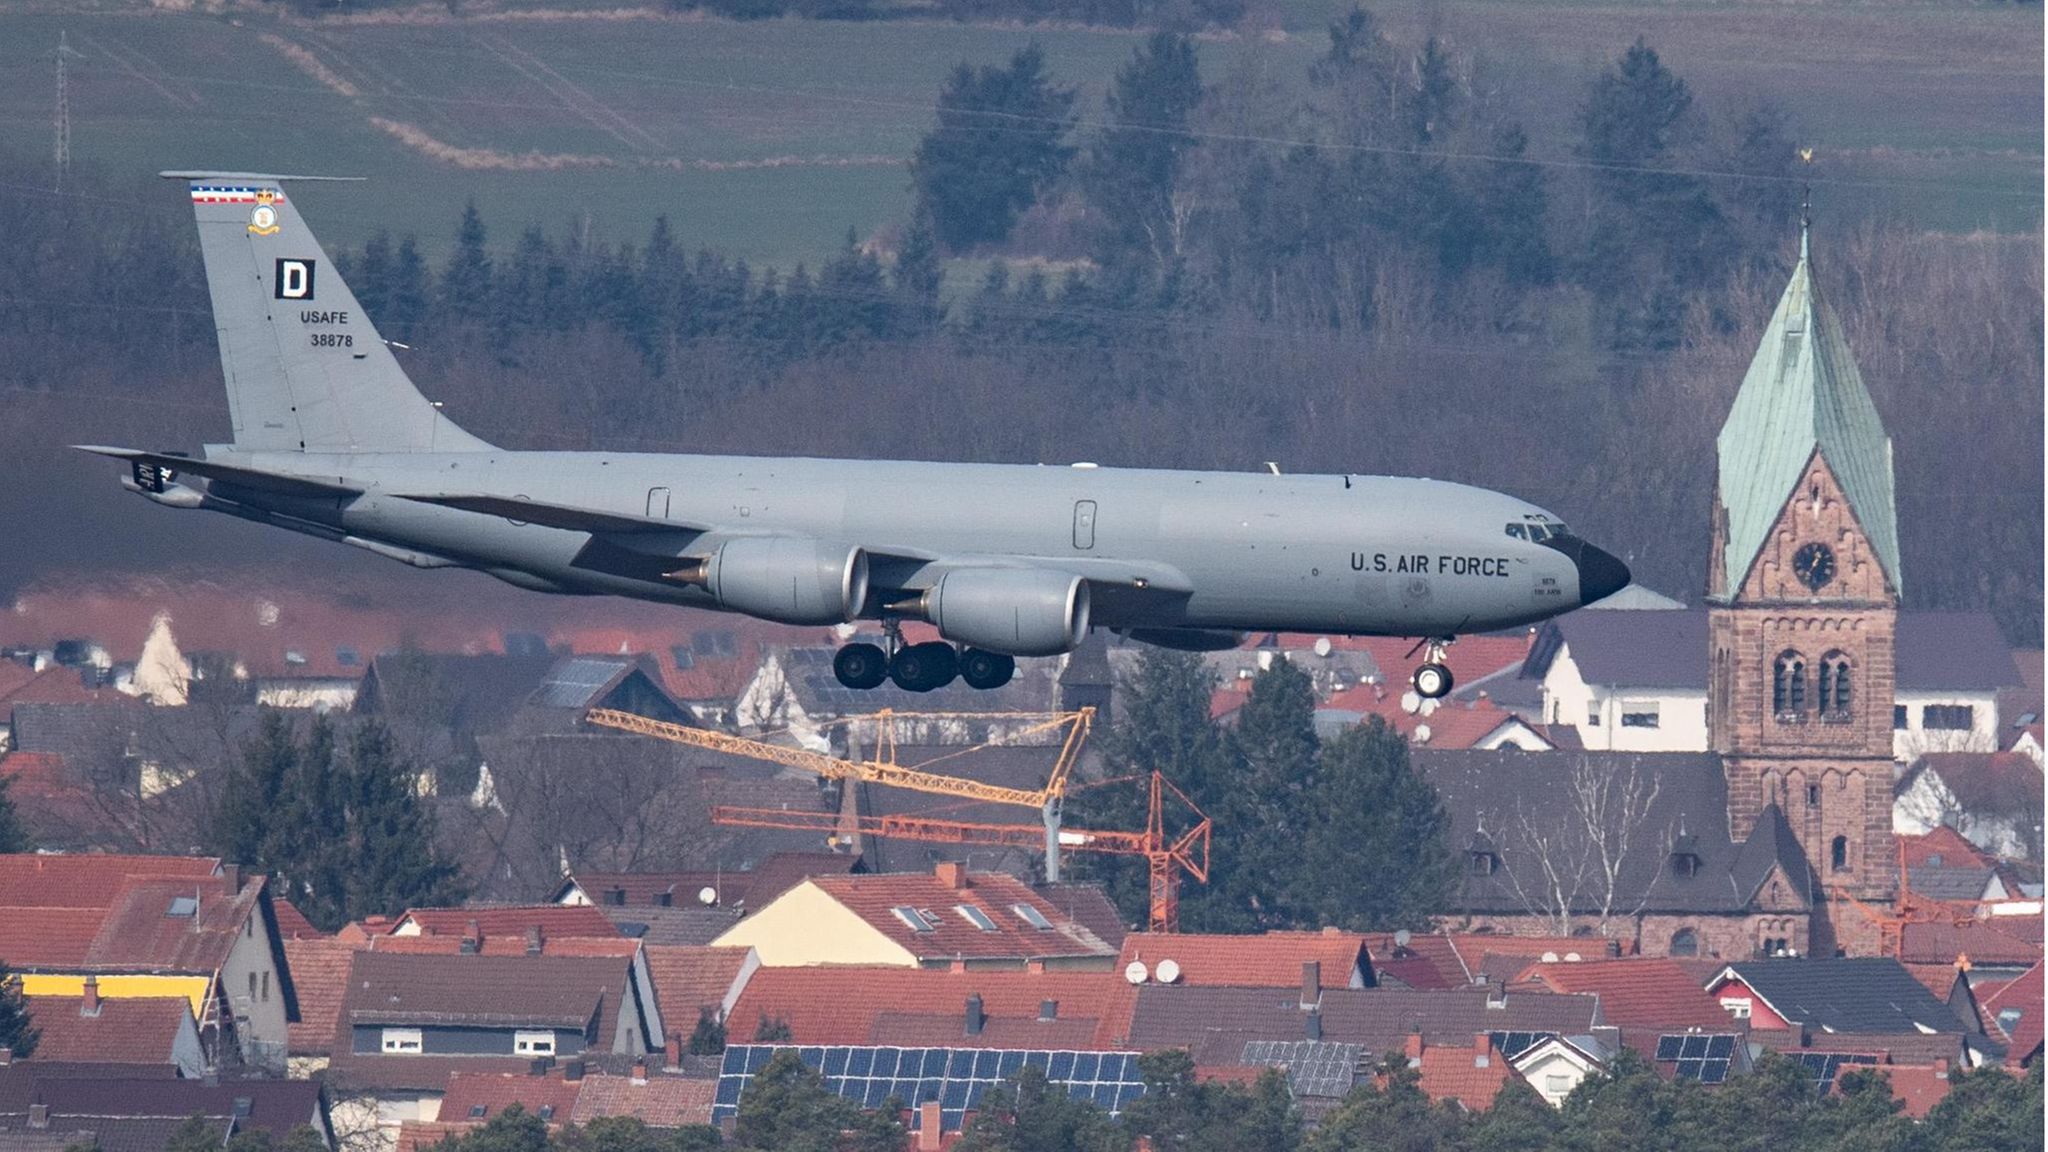 Ramstein Air Base: Das Drehkreuz für Waffenlieferungen in die Ukraine